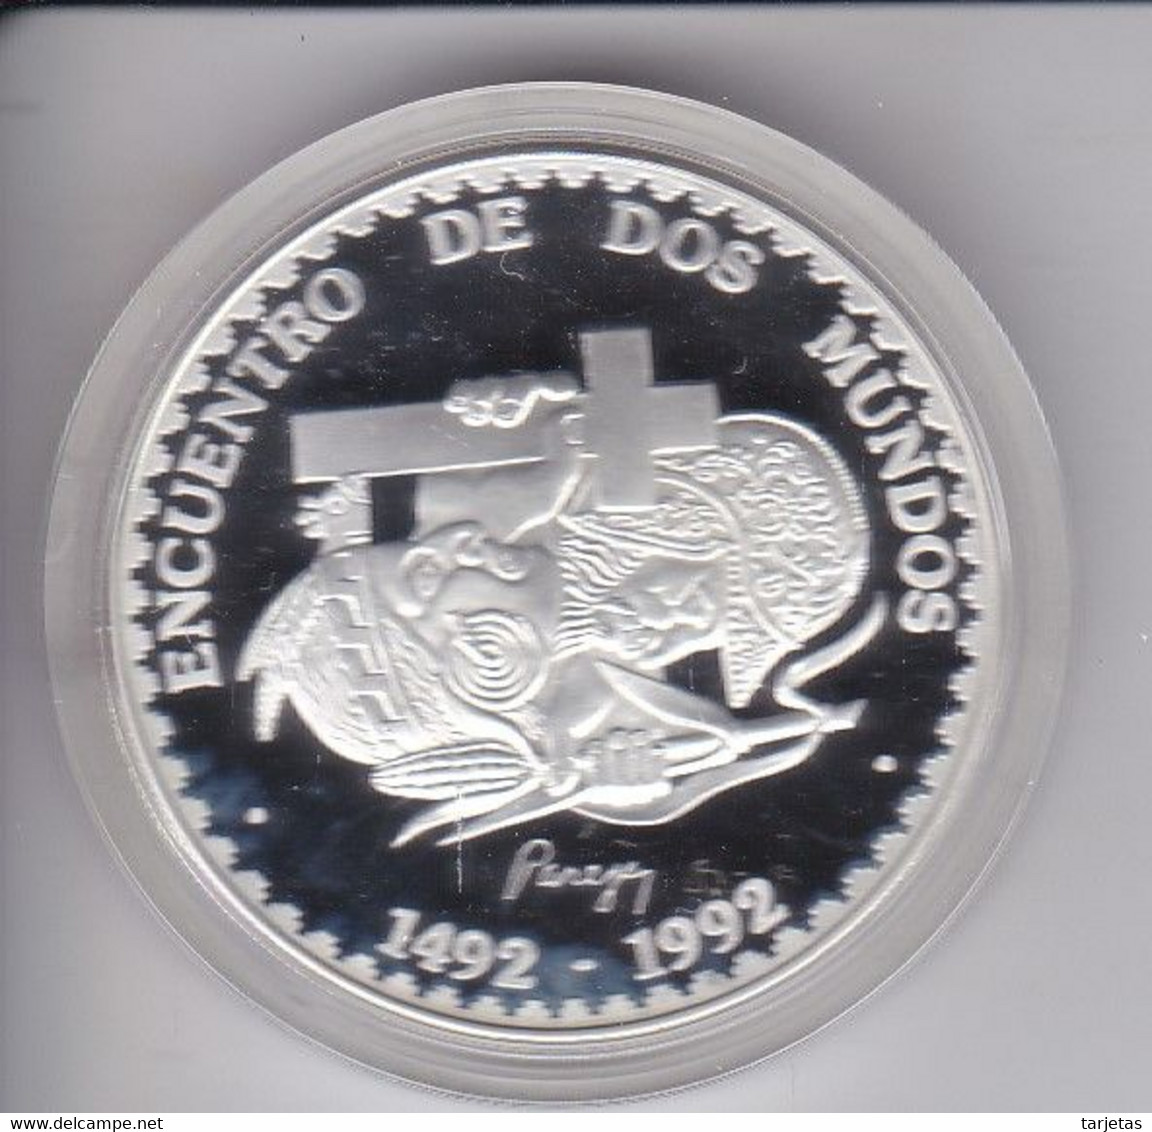 MONEDA PLATA DE PERU DE 1 NUEVO SOL DEL AÑO 1991 ENCUENTRO ENTRE DOS MUNDOS (COIN)(SILVER-ARGENT) - Peru